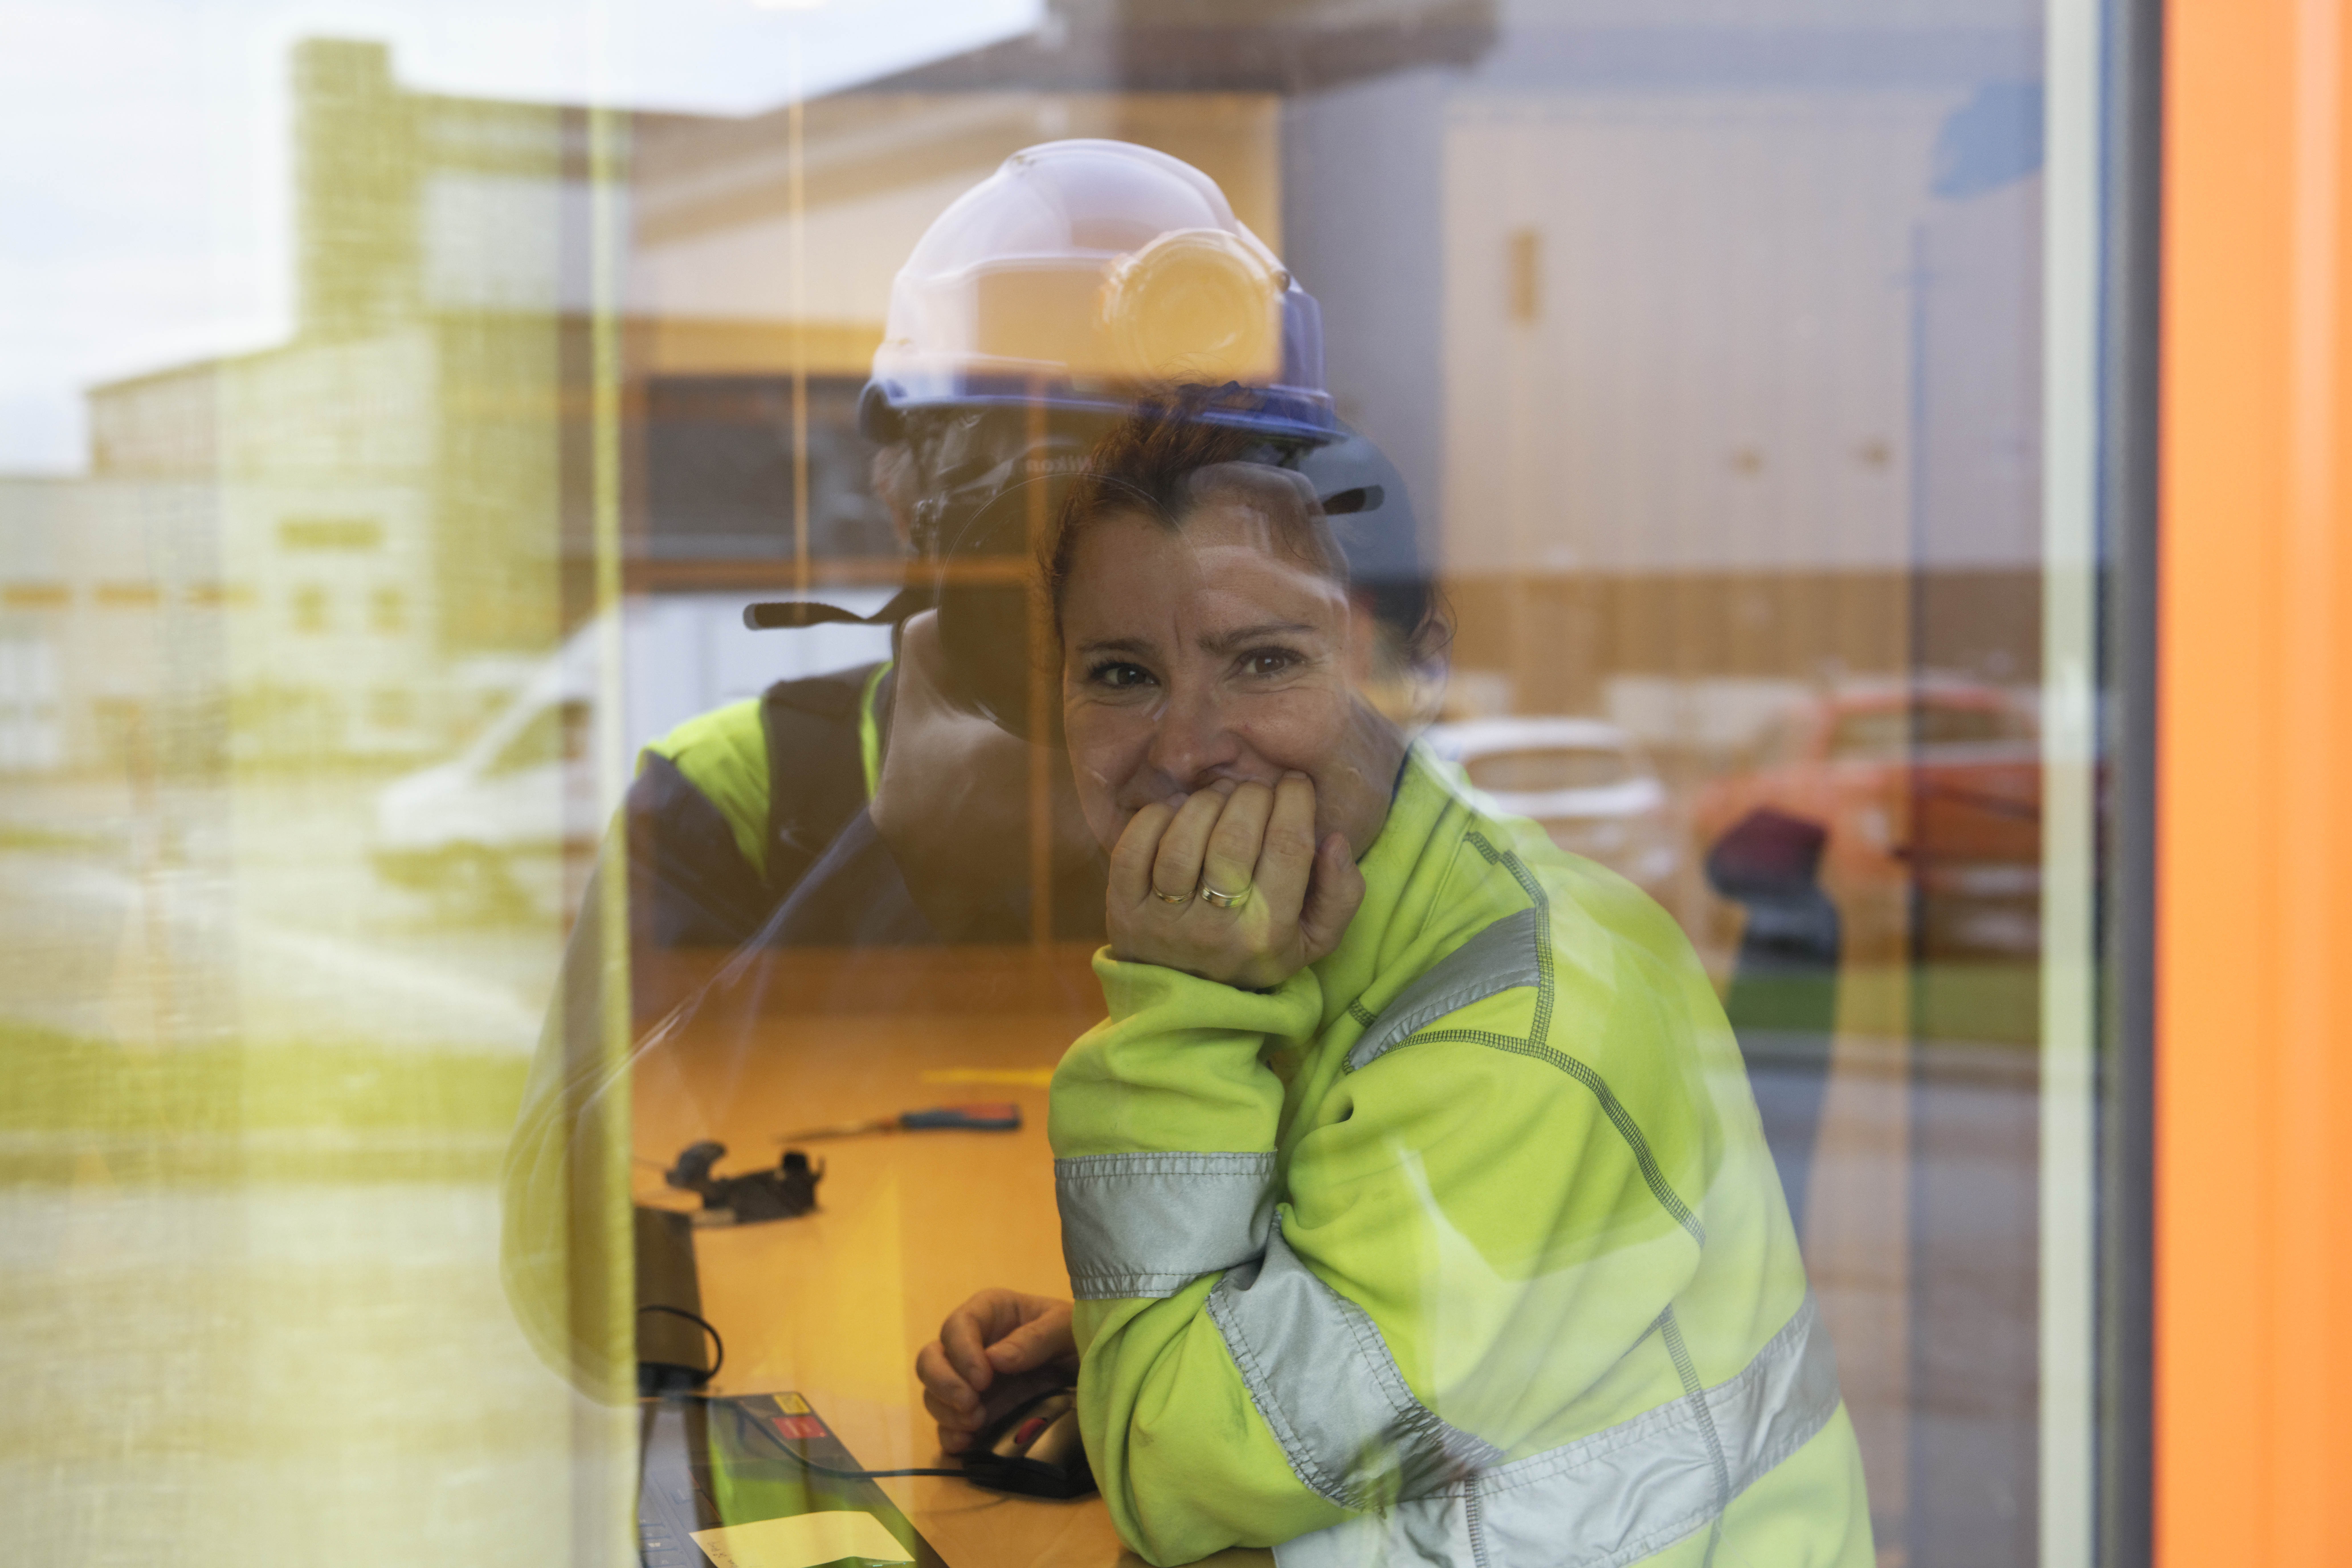 Redusert arbeidstid og mer fleksible arbeidstidsordninger kan være til fordel for økonomier, bedrifter og arbeidere. Bildet viser en kontoroperatør ved Garpenberggruven i Sverige, som er en av verdens mest moderne gruver, og Sveriges eldste gruveområde som ennå er i drift. Foto: ILO/M. Crozet.